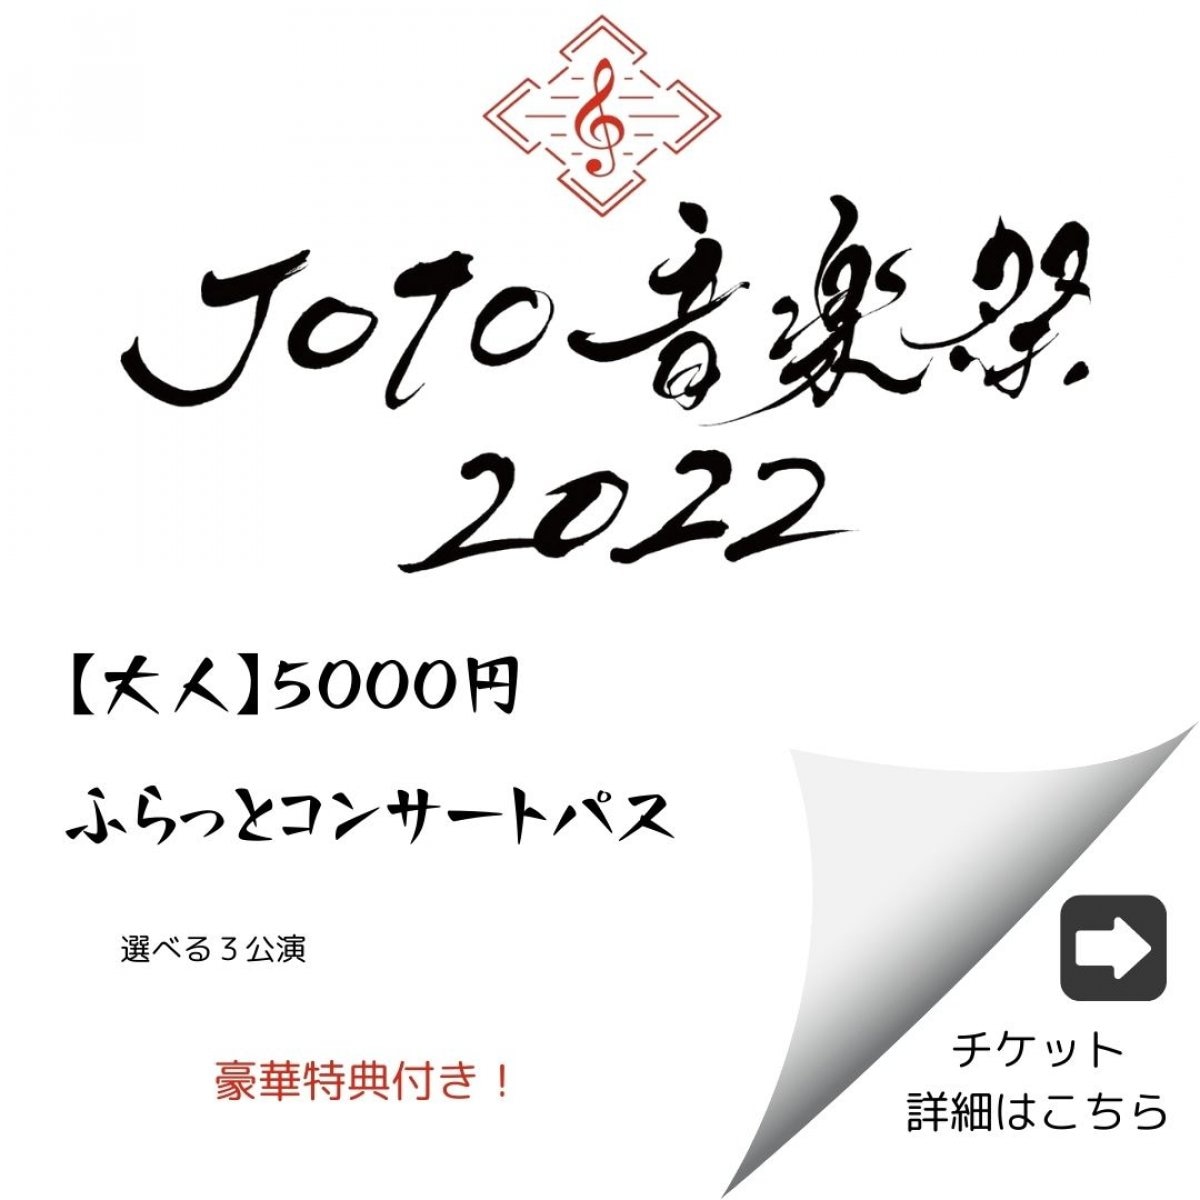 【大人】JOTO音楽祭2022/ふらっとコンサートパス